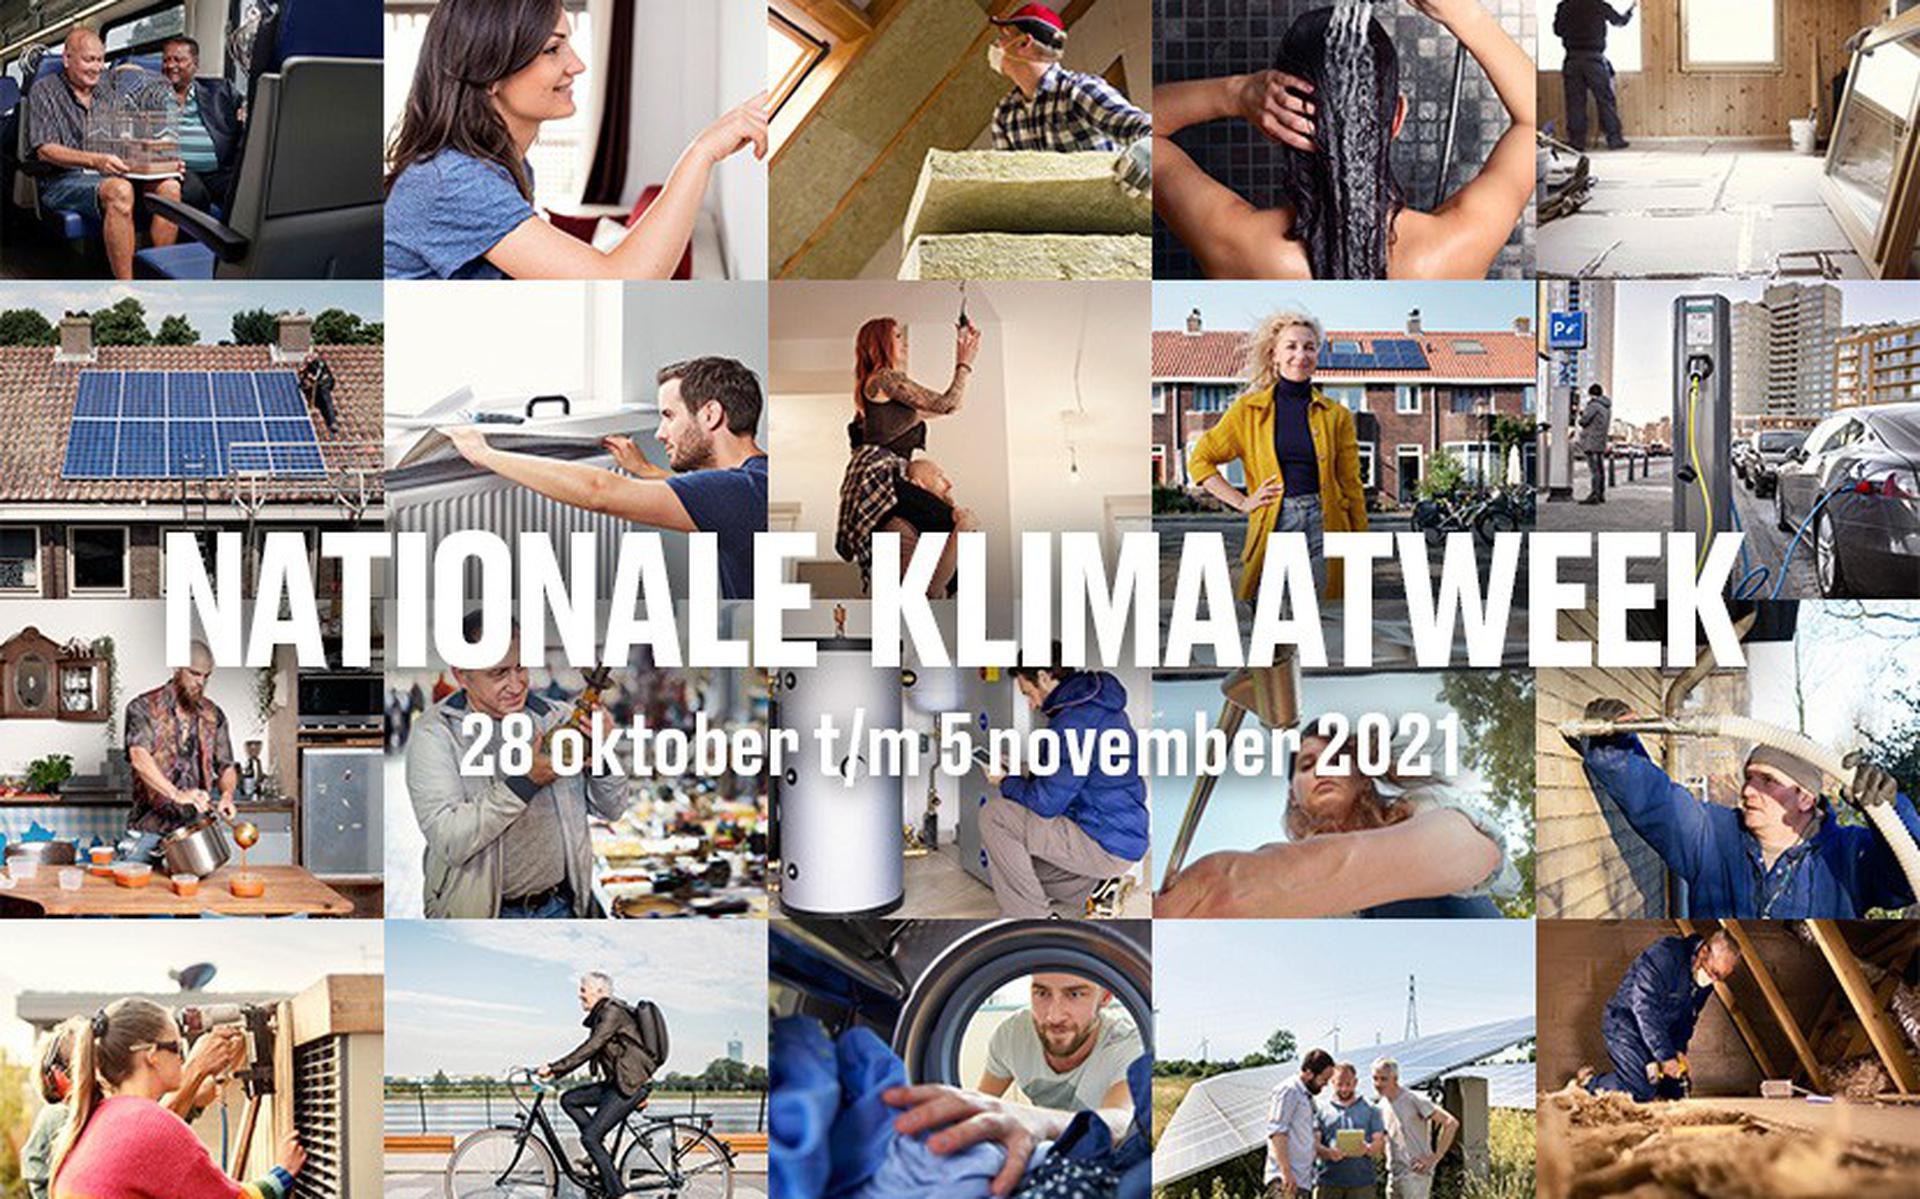 In de week van 28 oktober spelen de Klimaatburgemeesters een belangrijke rol om de rest van Nederland te inspireren zich ook in te zetten.